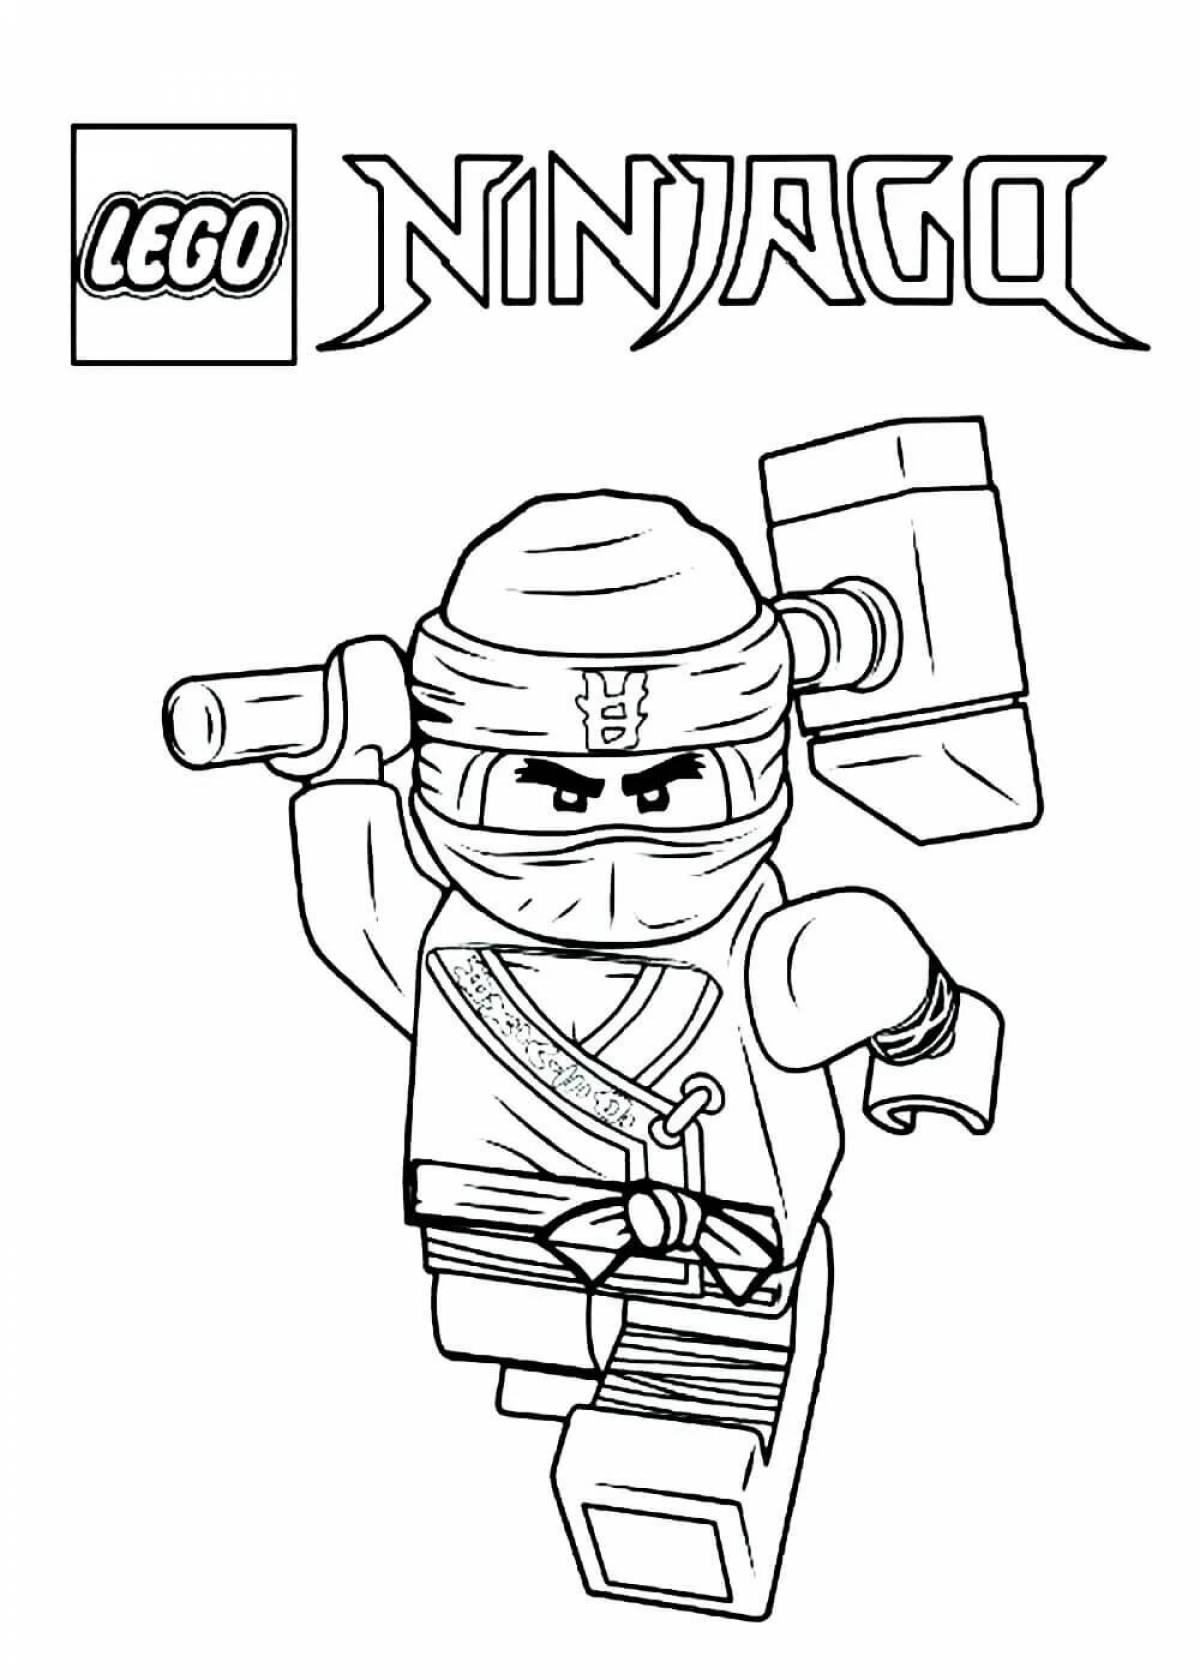 Coloring fantasy ninjago lego movie